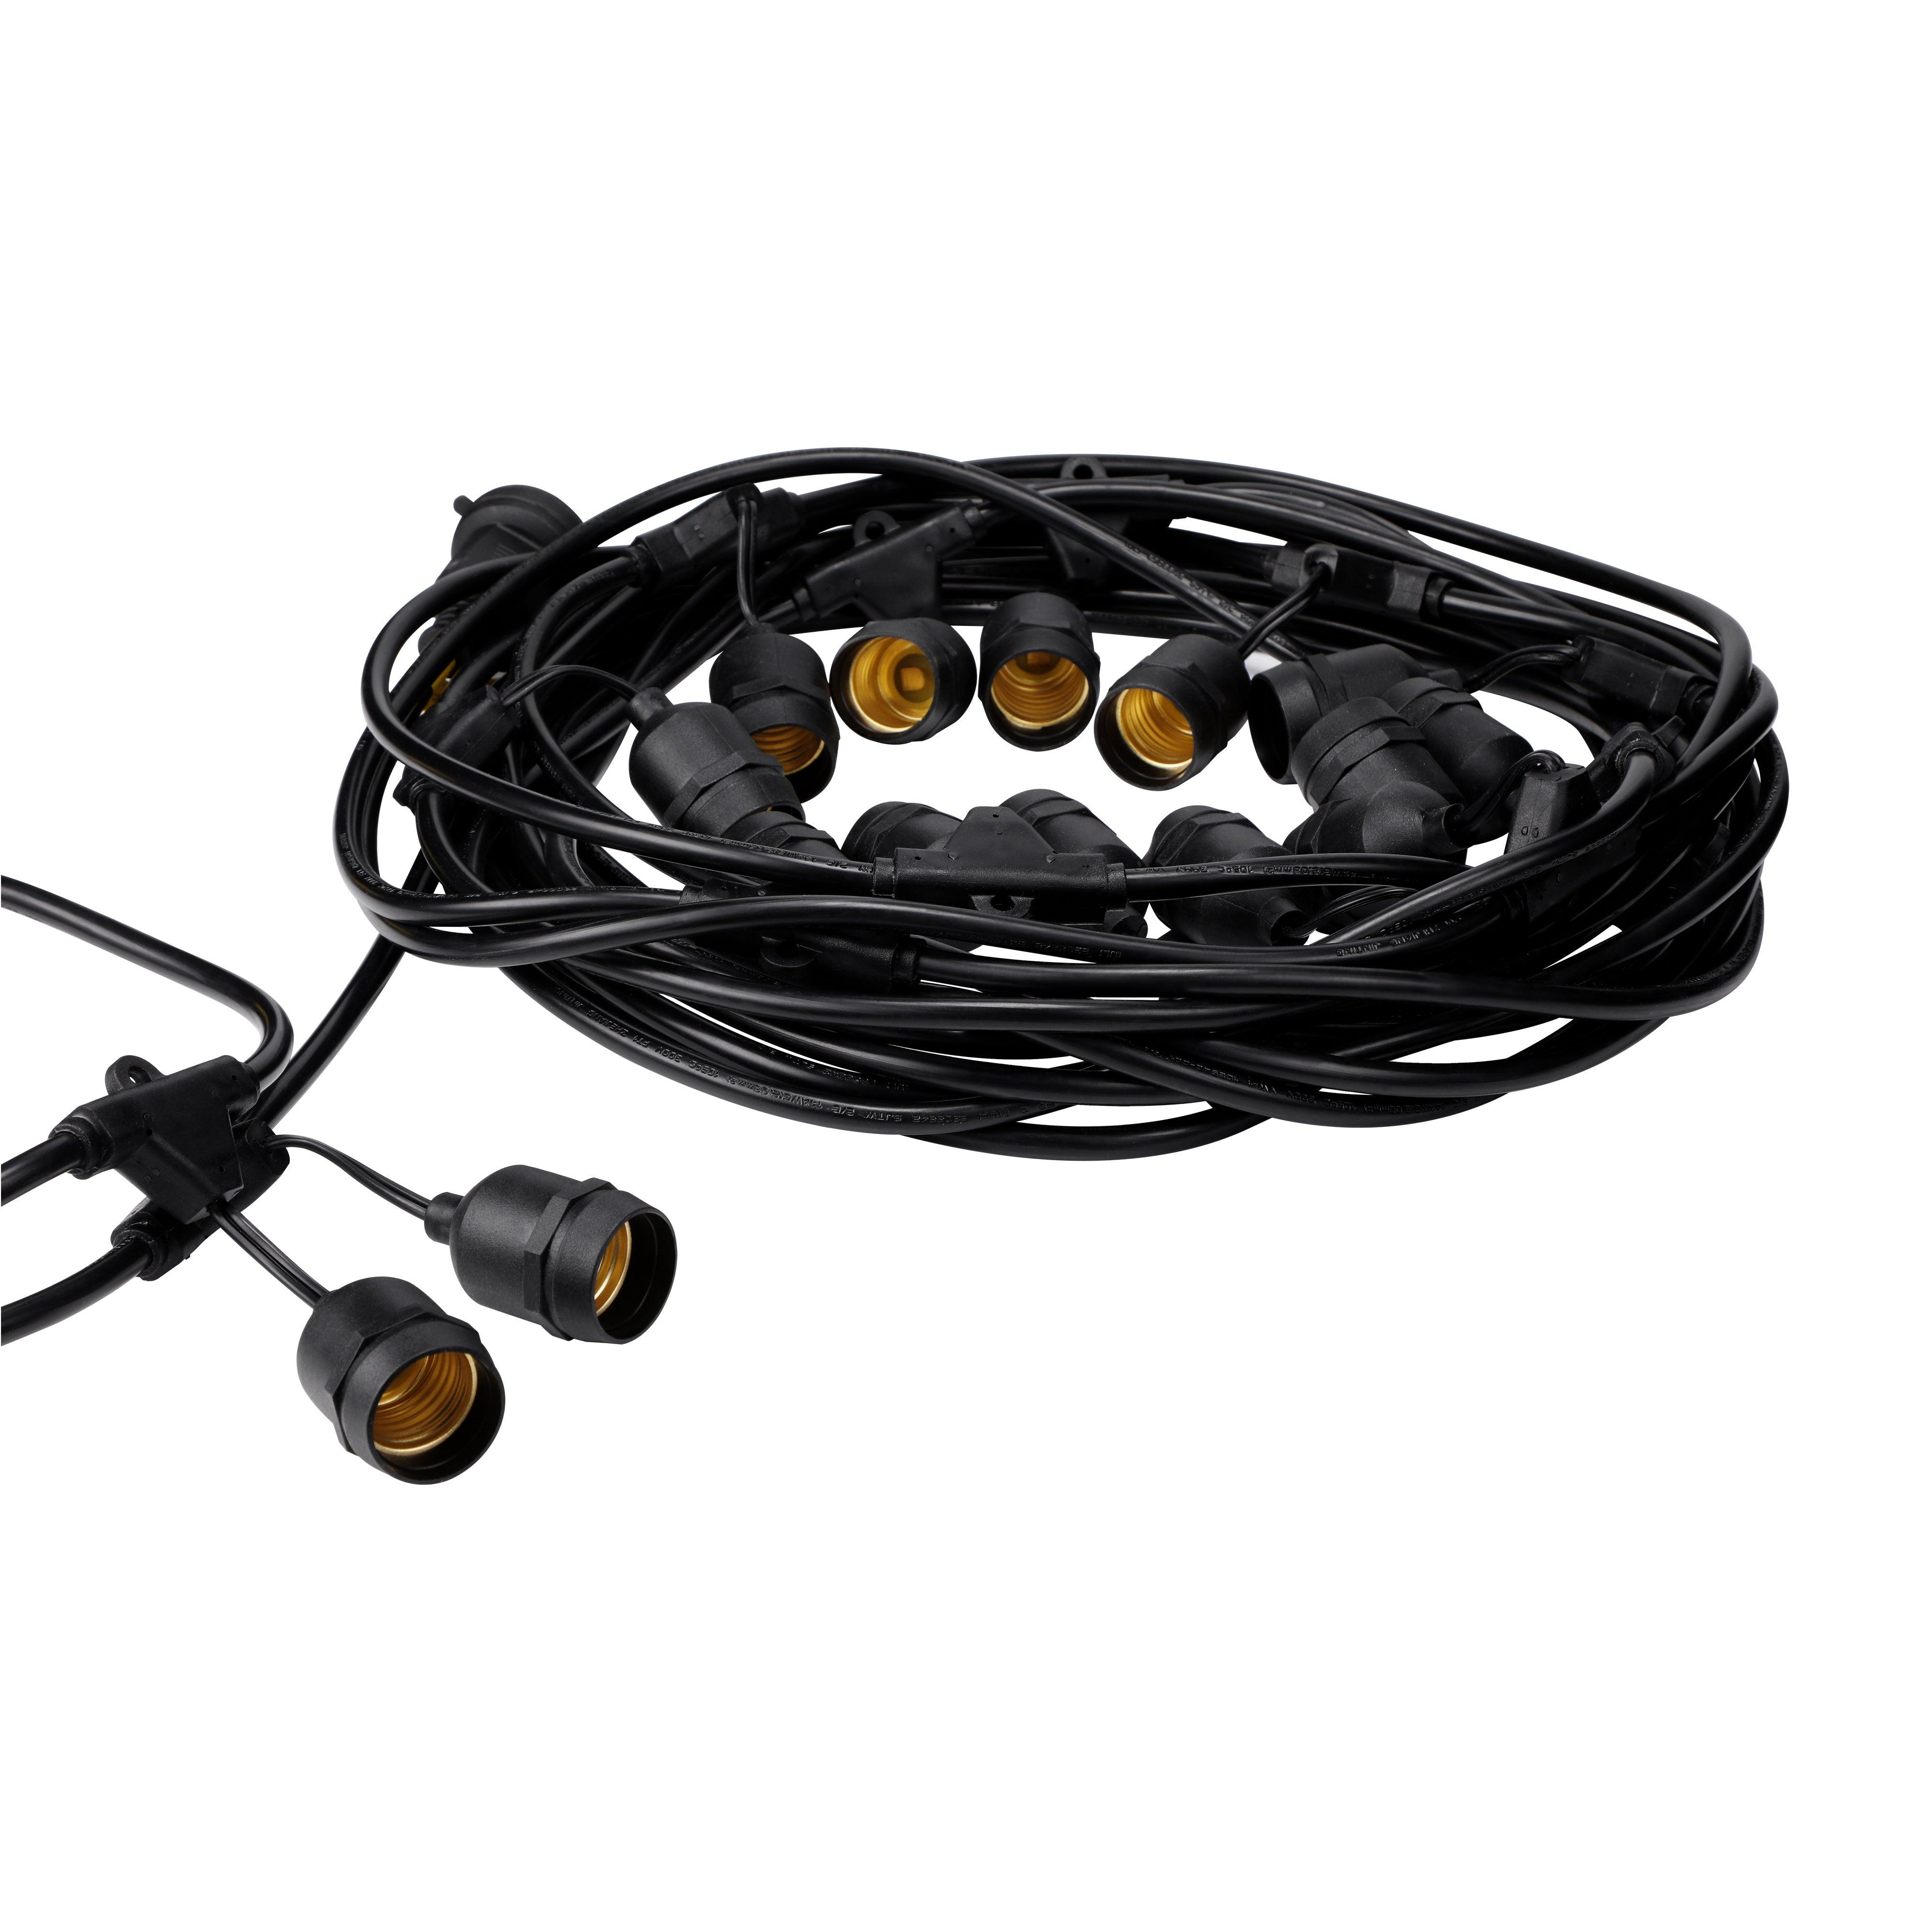 TORCHSTAR® Pro Retro Outdoor String Light - 50 Feet 24 Sockets